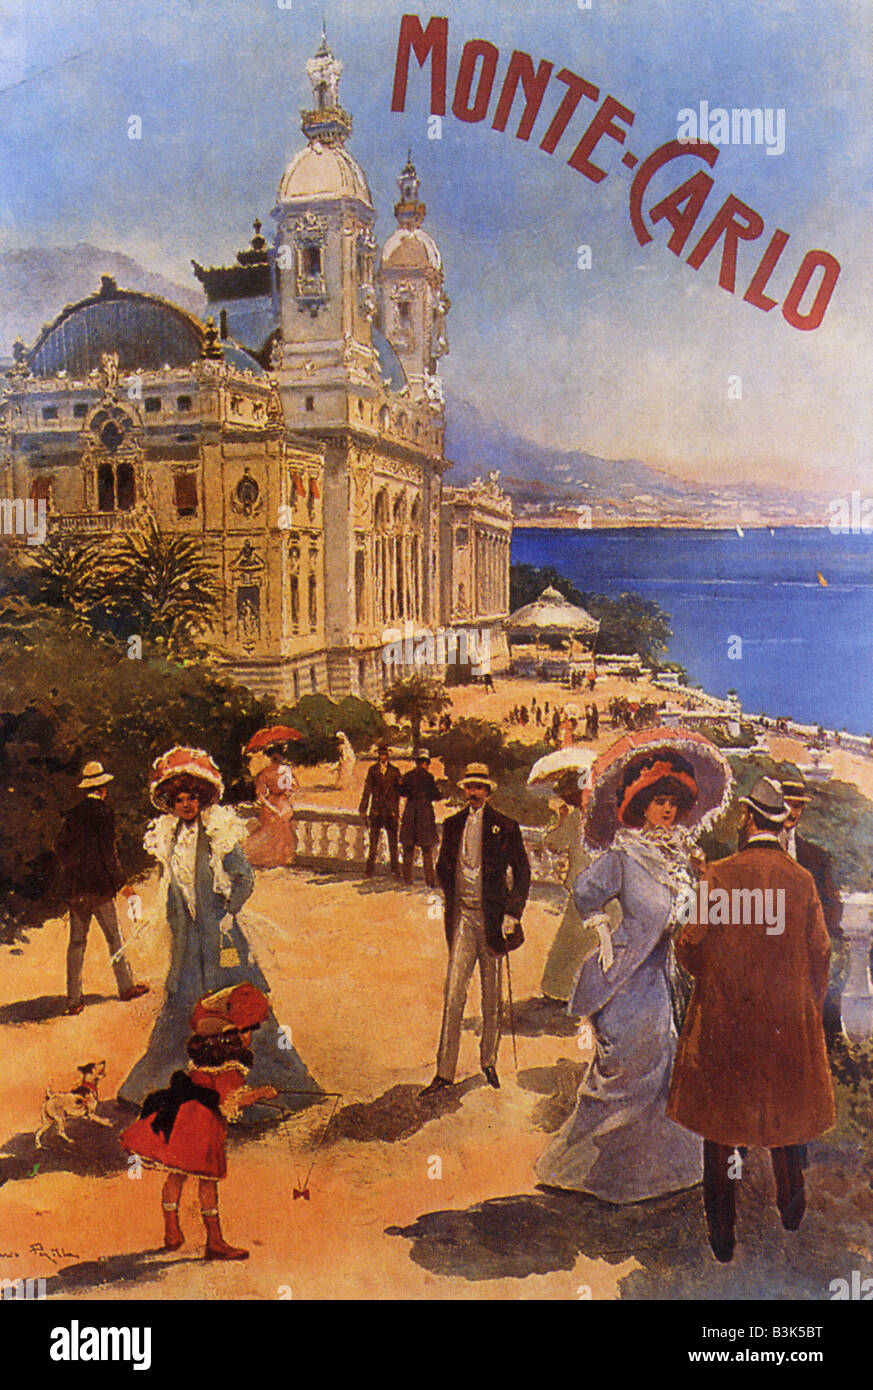 MONACO-Werbeplakat aus dem Jahr 1900 Stockfoto